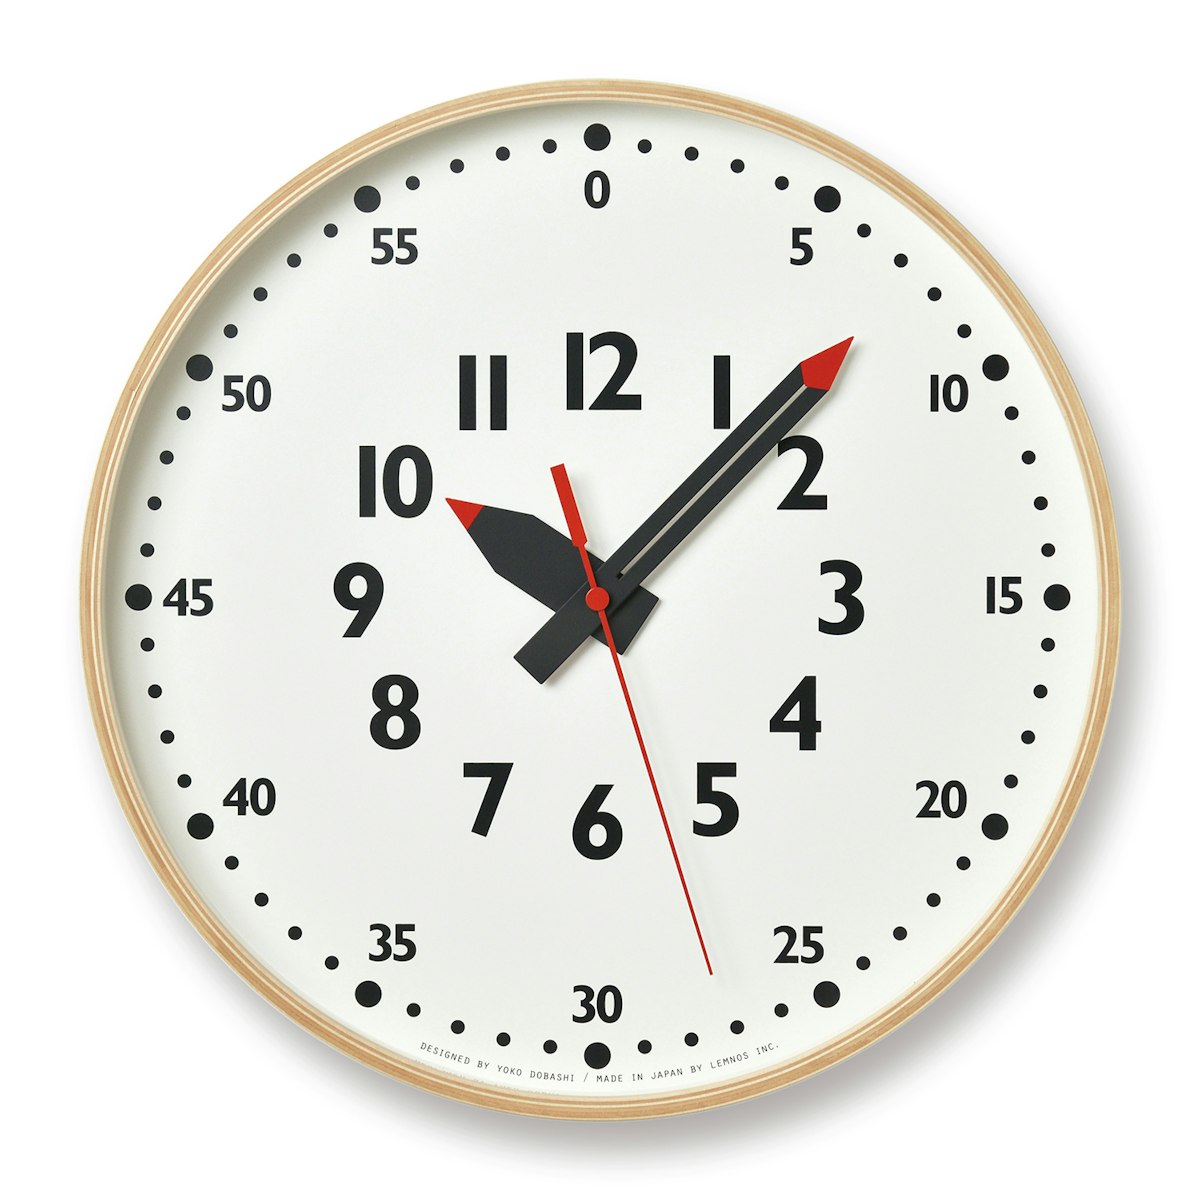 Lemnos/fun pun clock Lサイズ